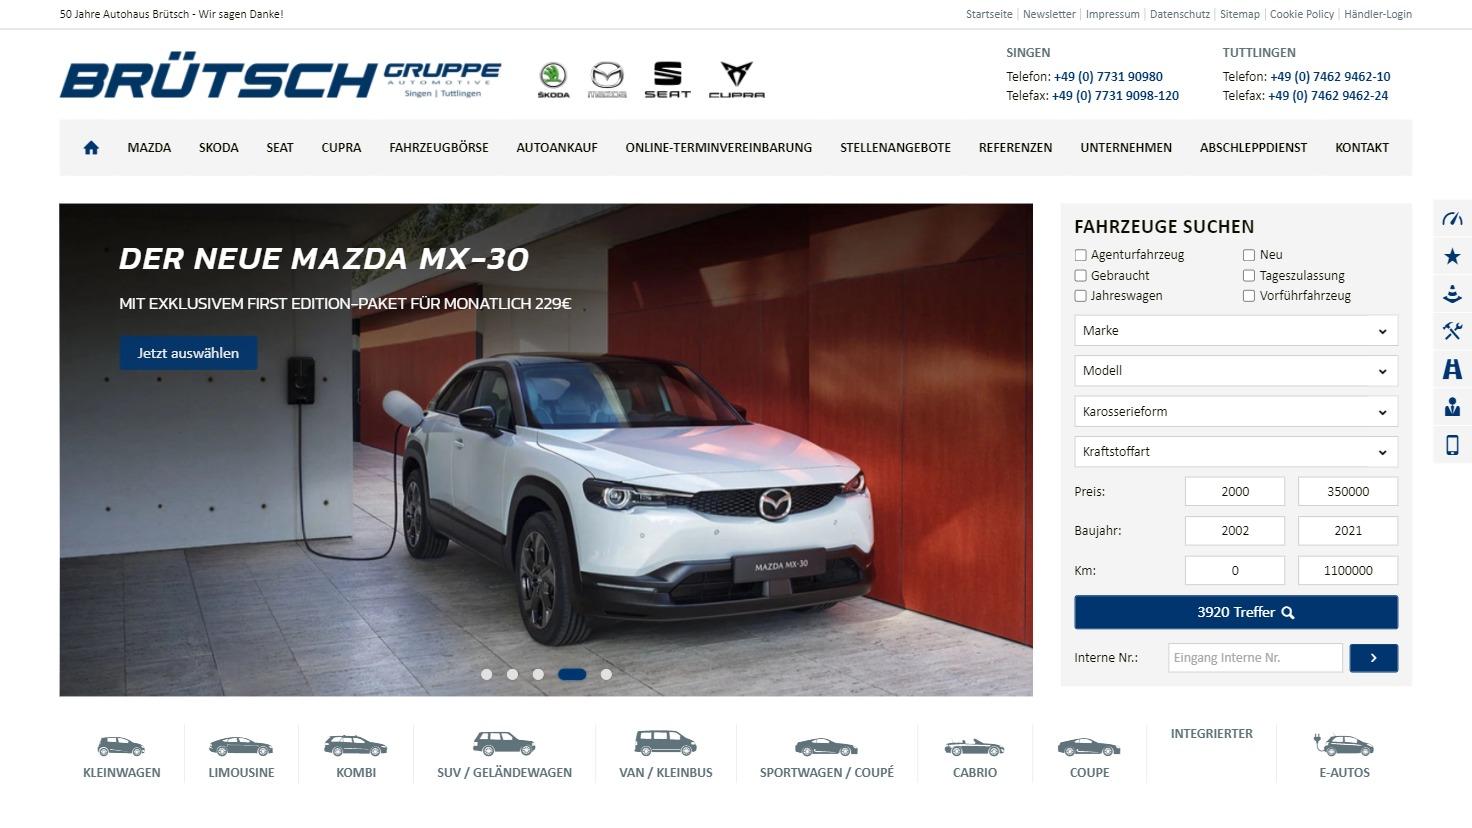 Autohaus Brütsch - Vertragspartner von Skoda, Seat, Cupra und Mazda